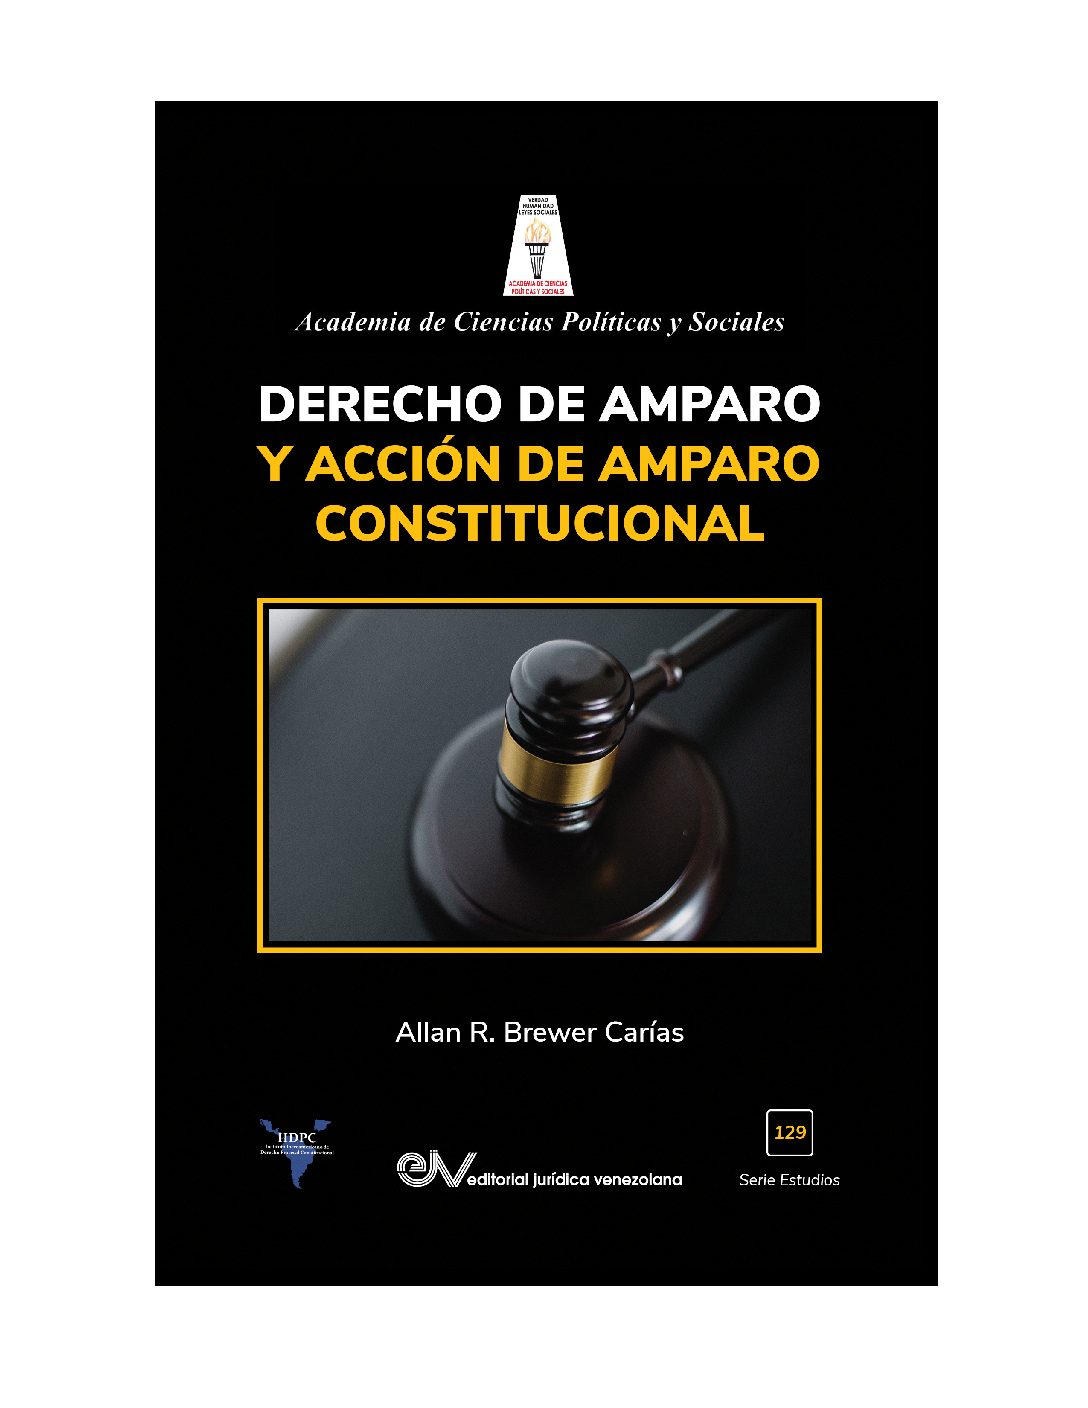 Disponible a texto completo el libro: Derecho de amparo y acción de amparo constitucional del académico Dr. Allan R. Brewer-Carías